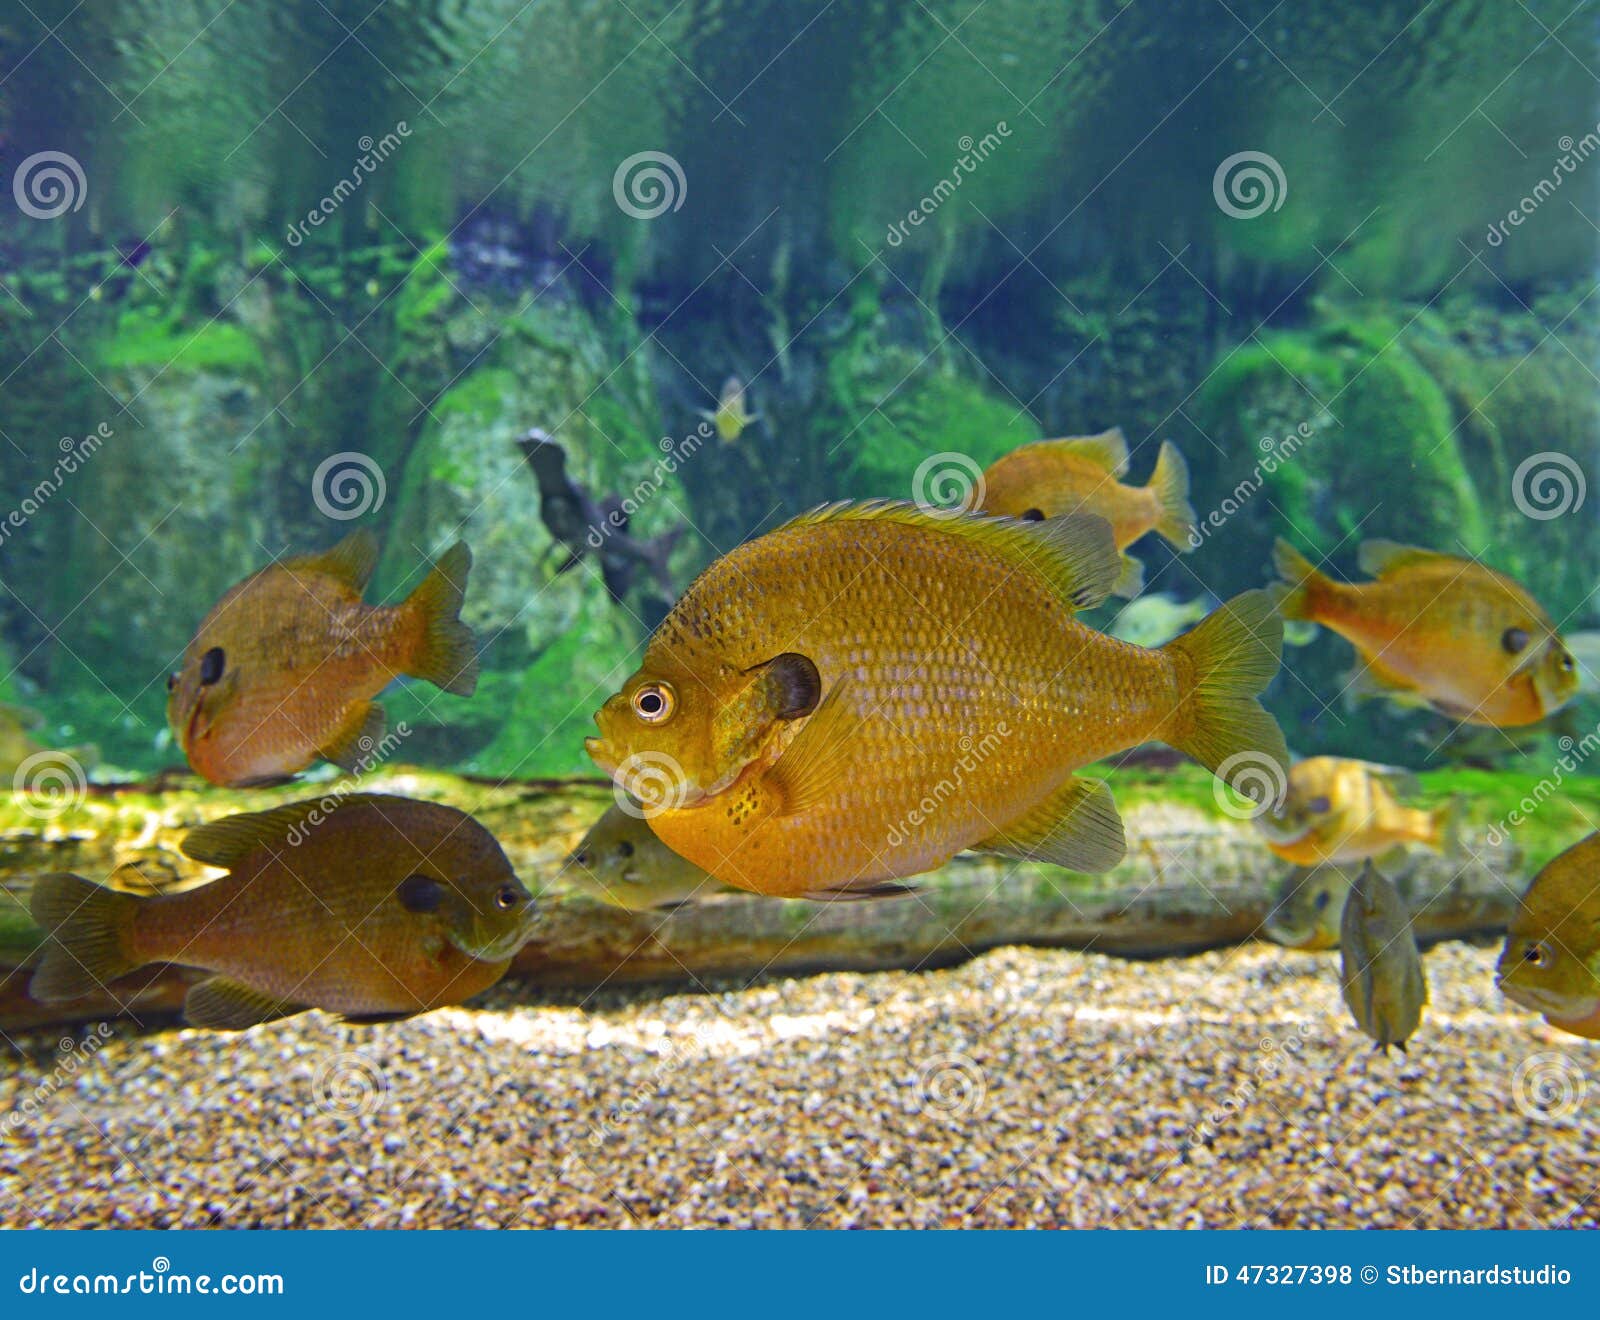 A School of Bluegill Sunfish Stock Photo - Image of brim, aquarium